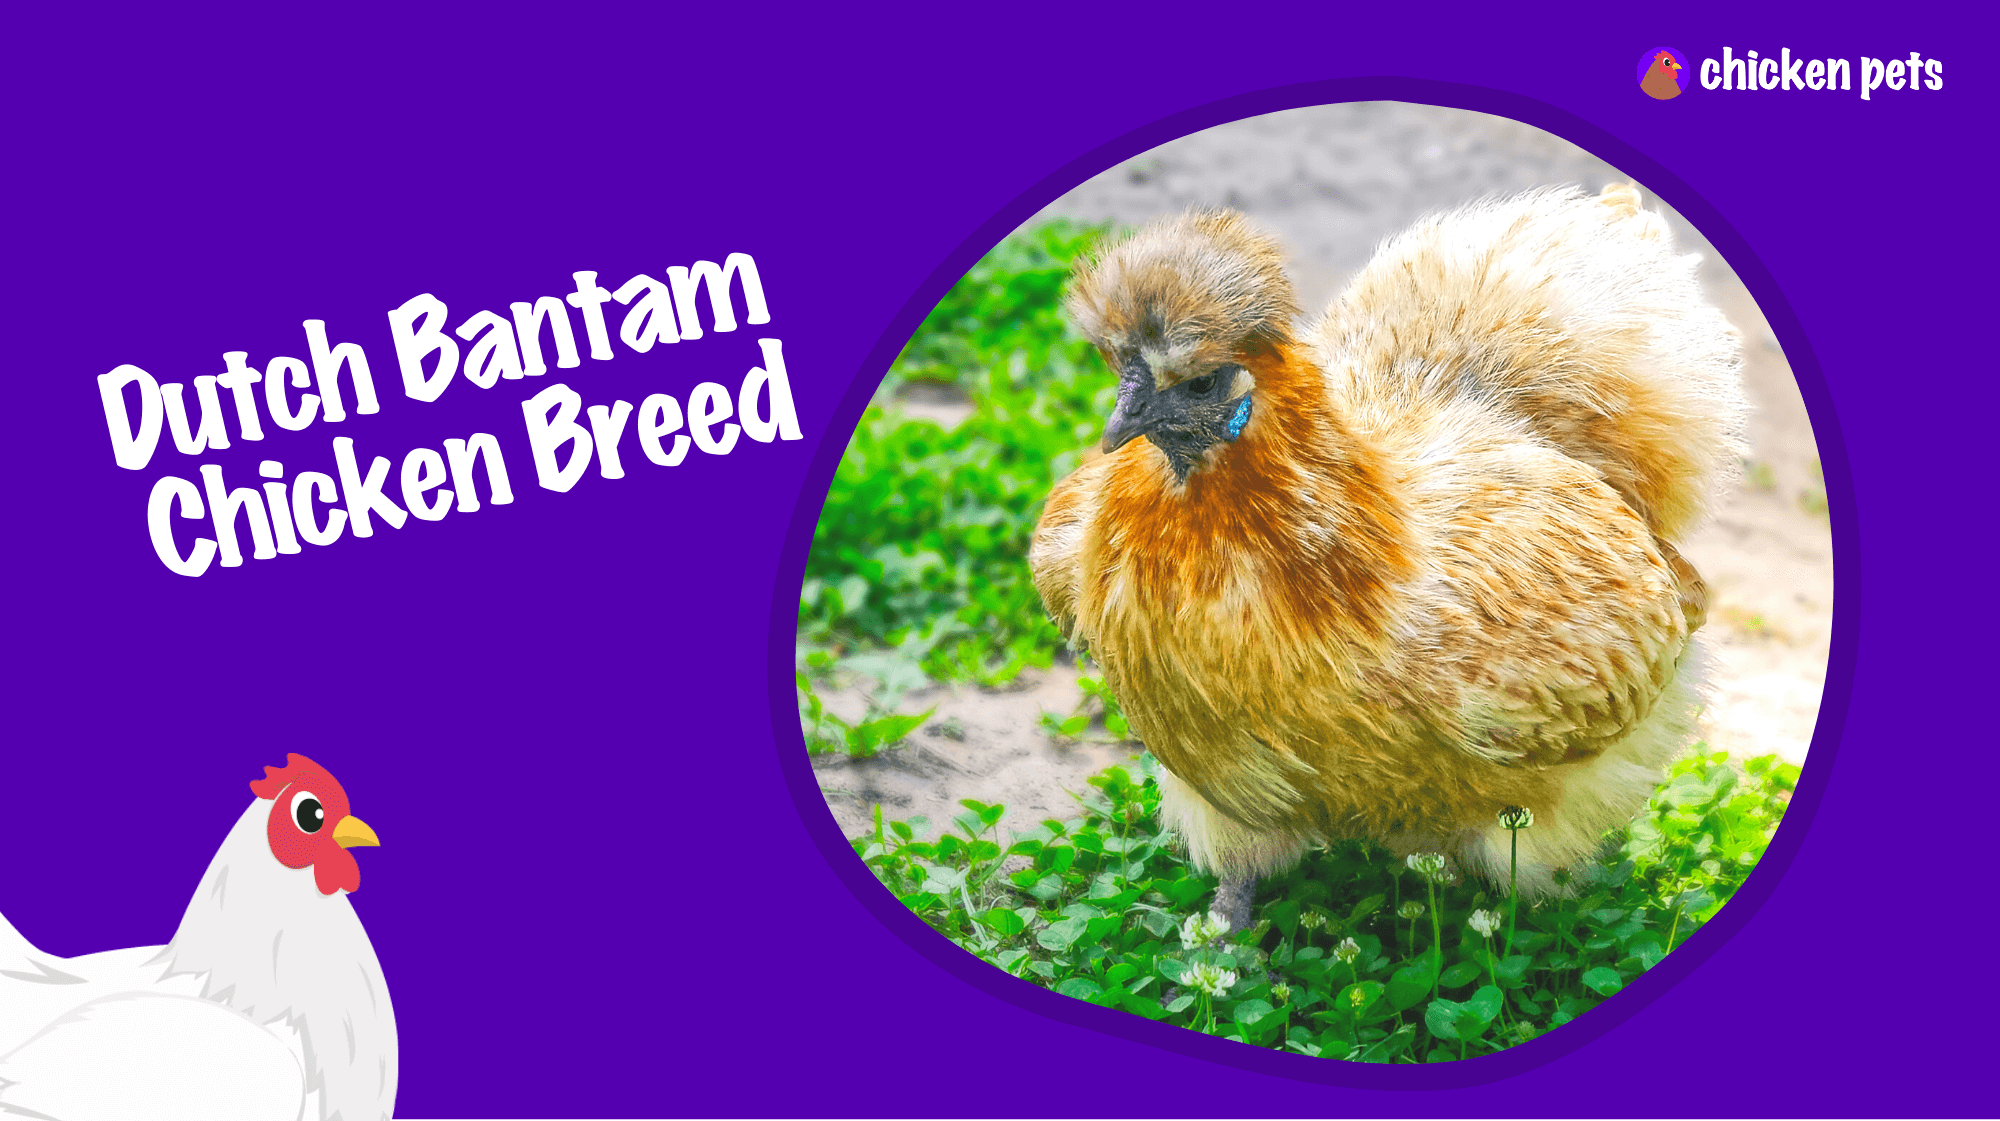 Dutch Bantam chicken breed